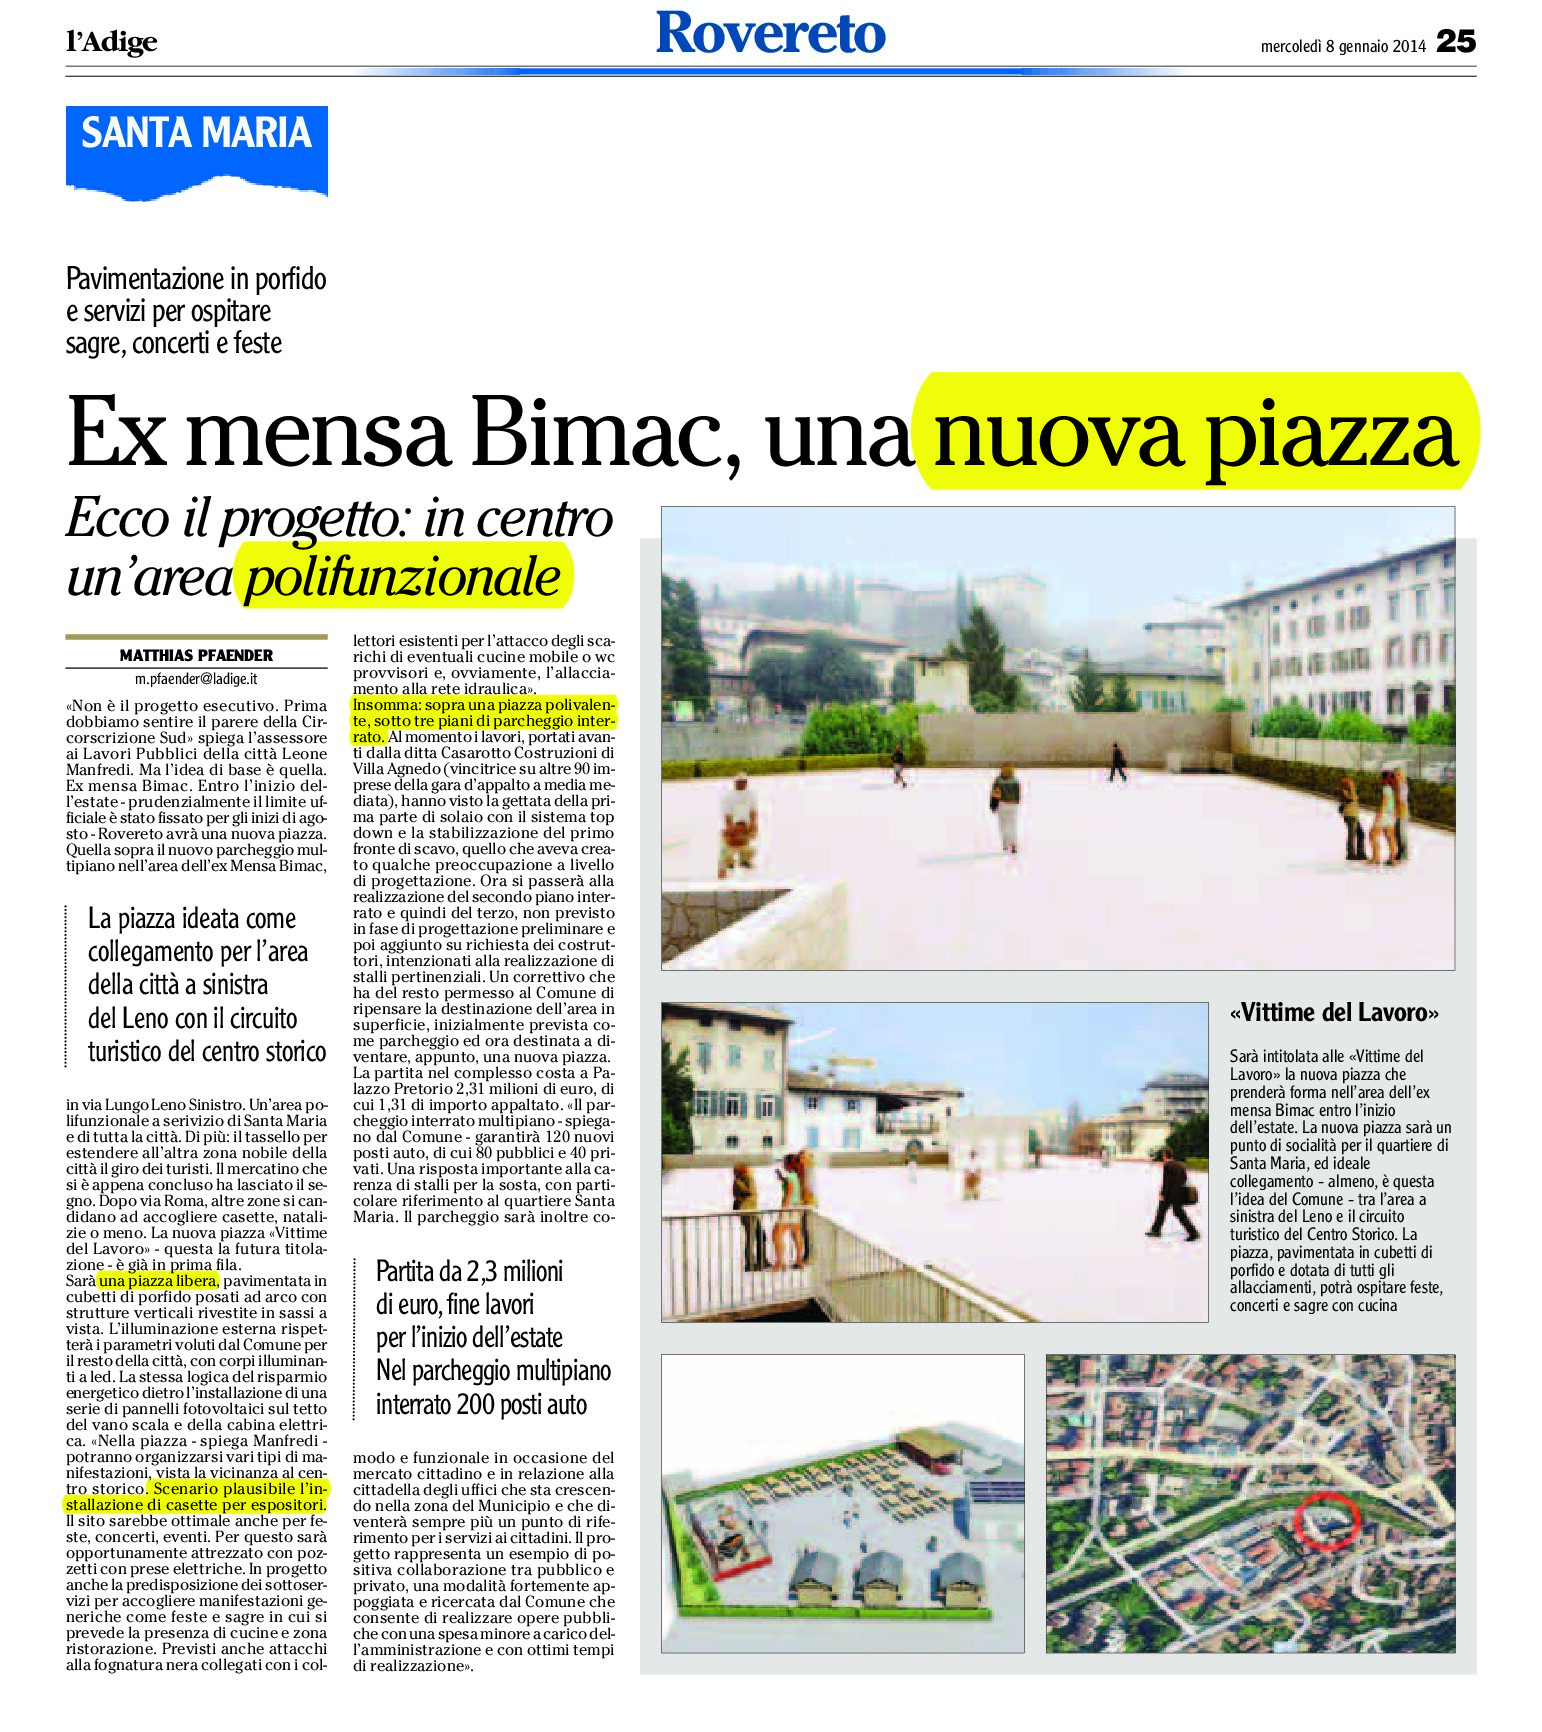 Rovereto: ex mensa Bimac, una nuova piazza.